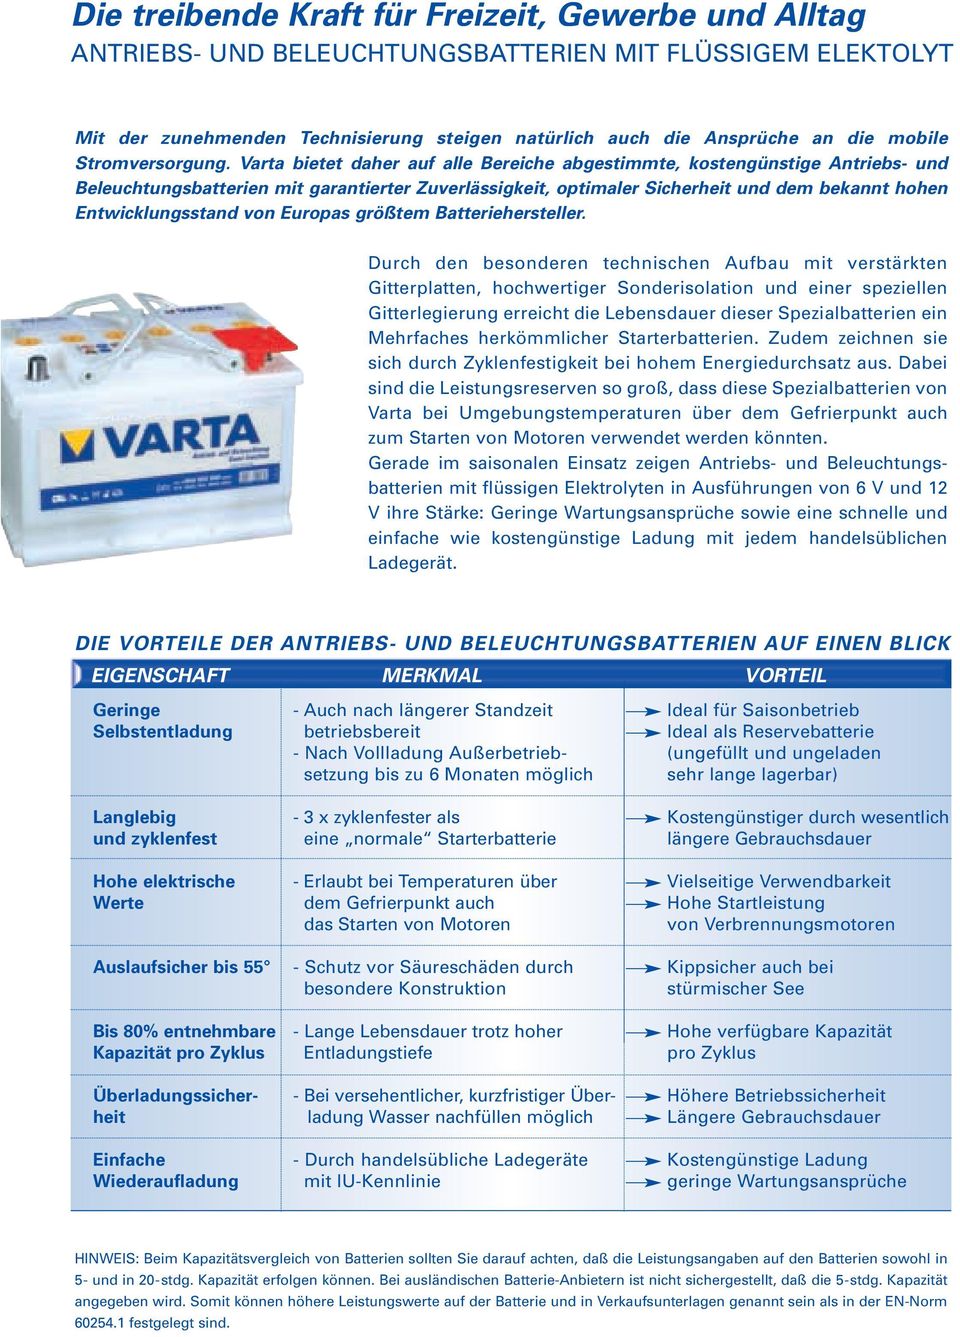 Varta bietet daher auf alle Bereiche abgestimmte, kostengünstige Antriebs- und Beleuchtungsbatterien mit garantierter Zuverlässigkeit, optimaler Sicherheit und dem bekannt hohen Entwicklungsstand von